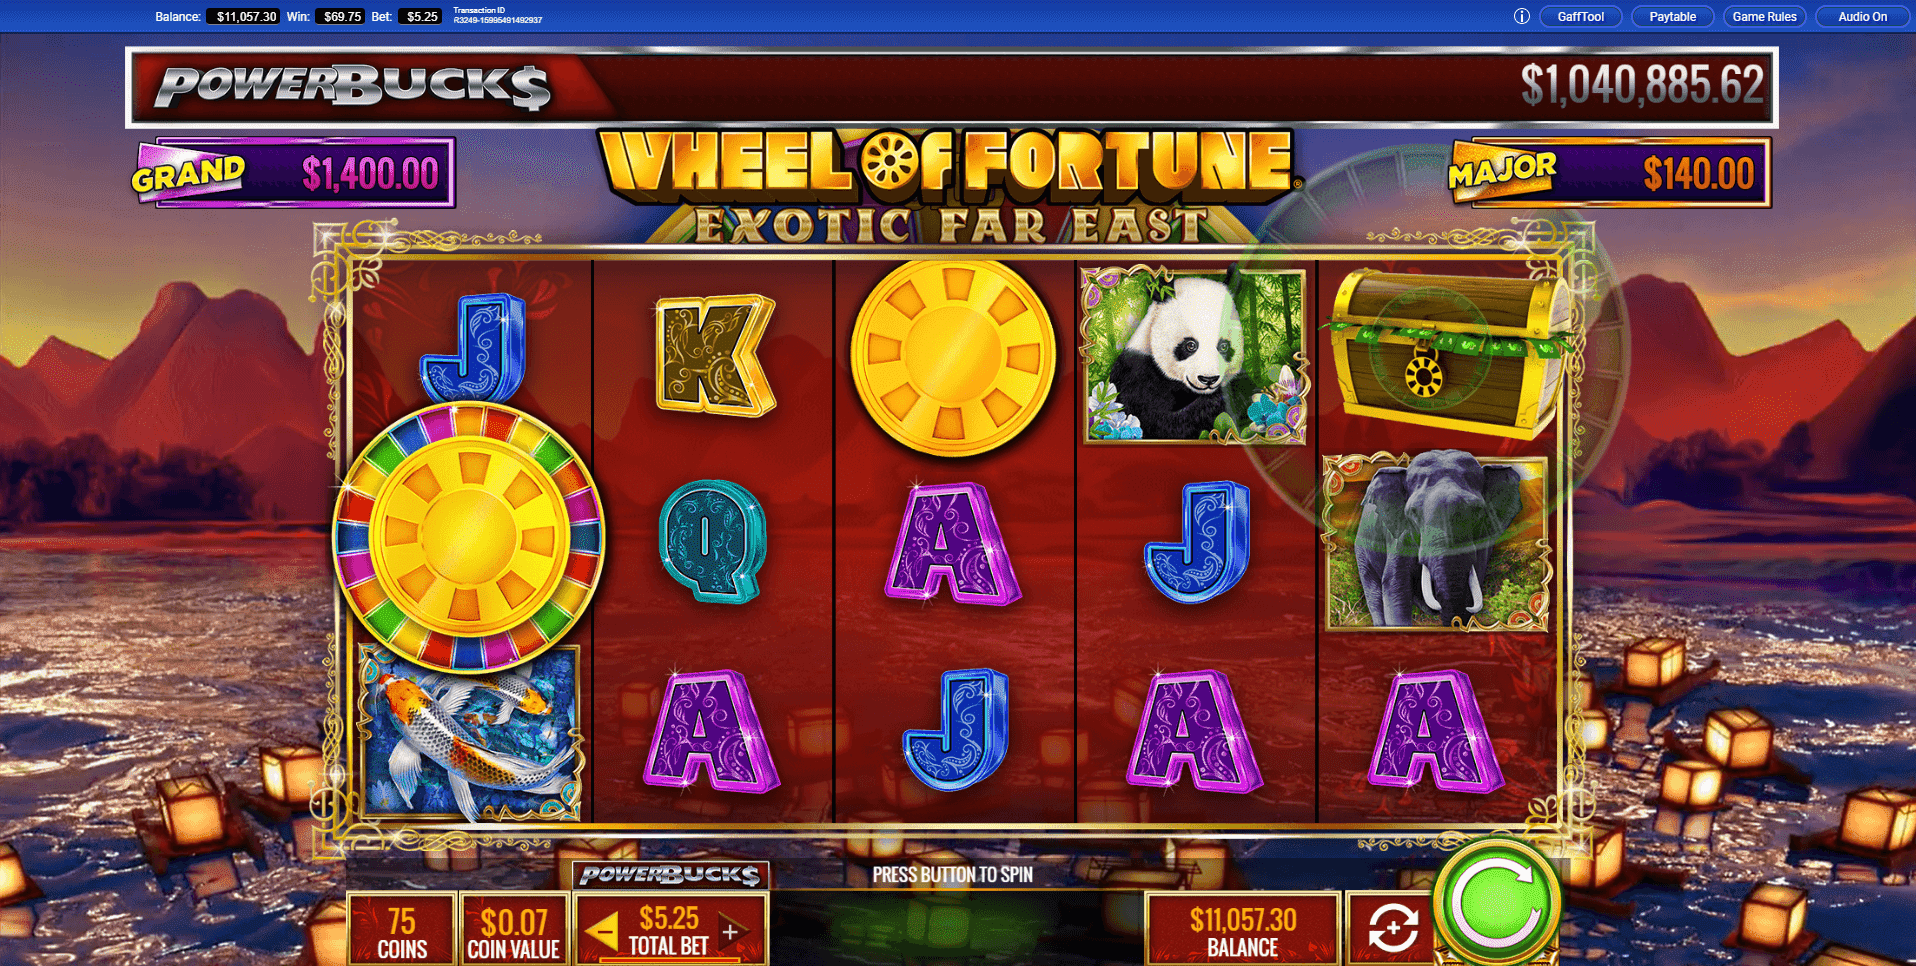 Powerbucks Wheel of Fortune Exotic Far East slot play free